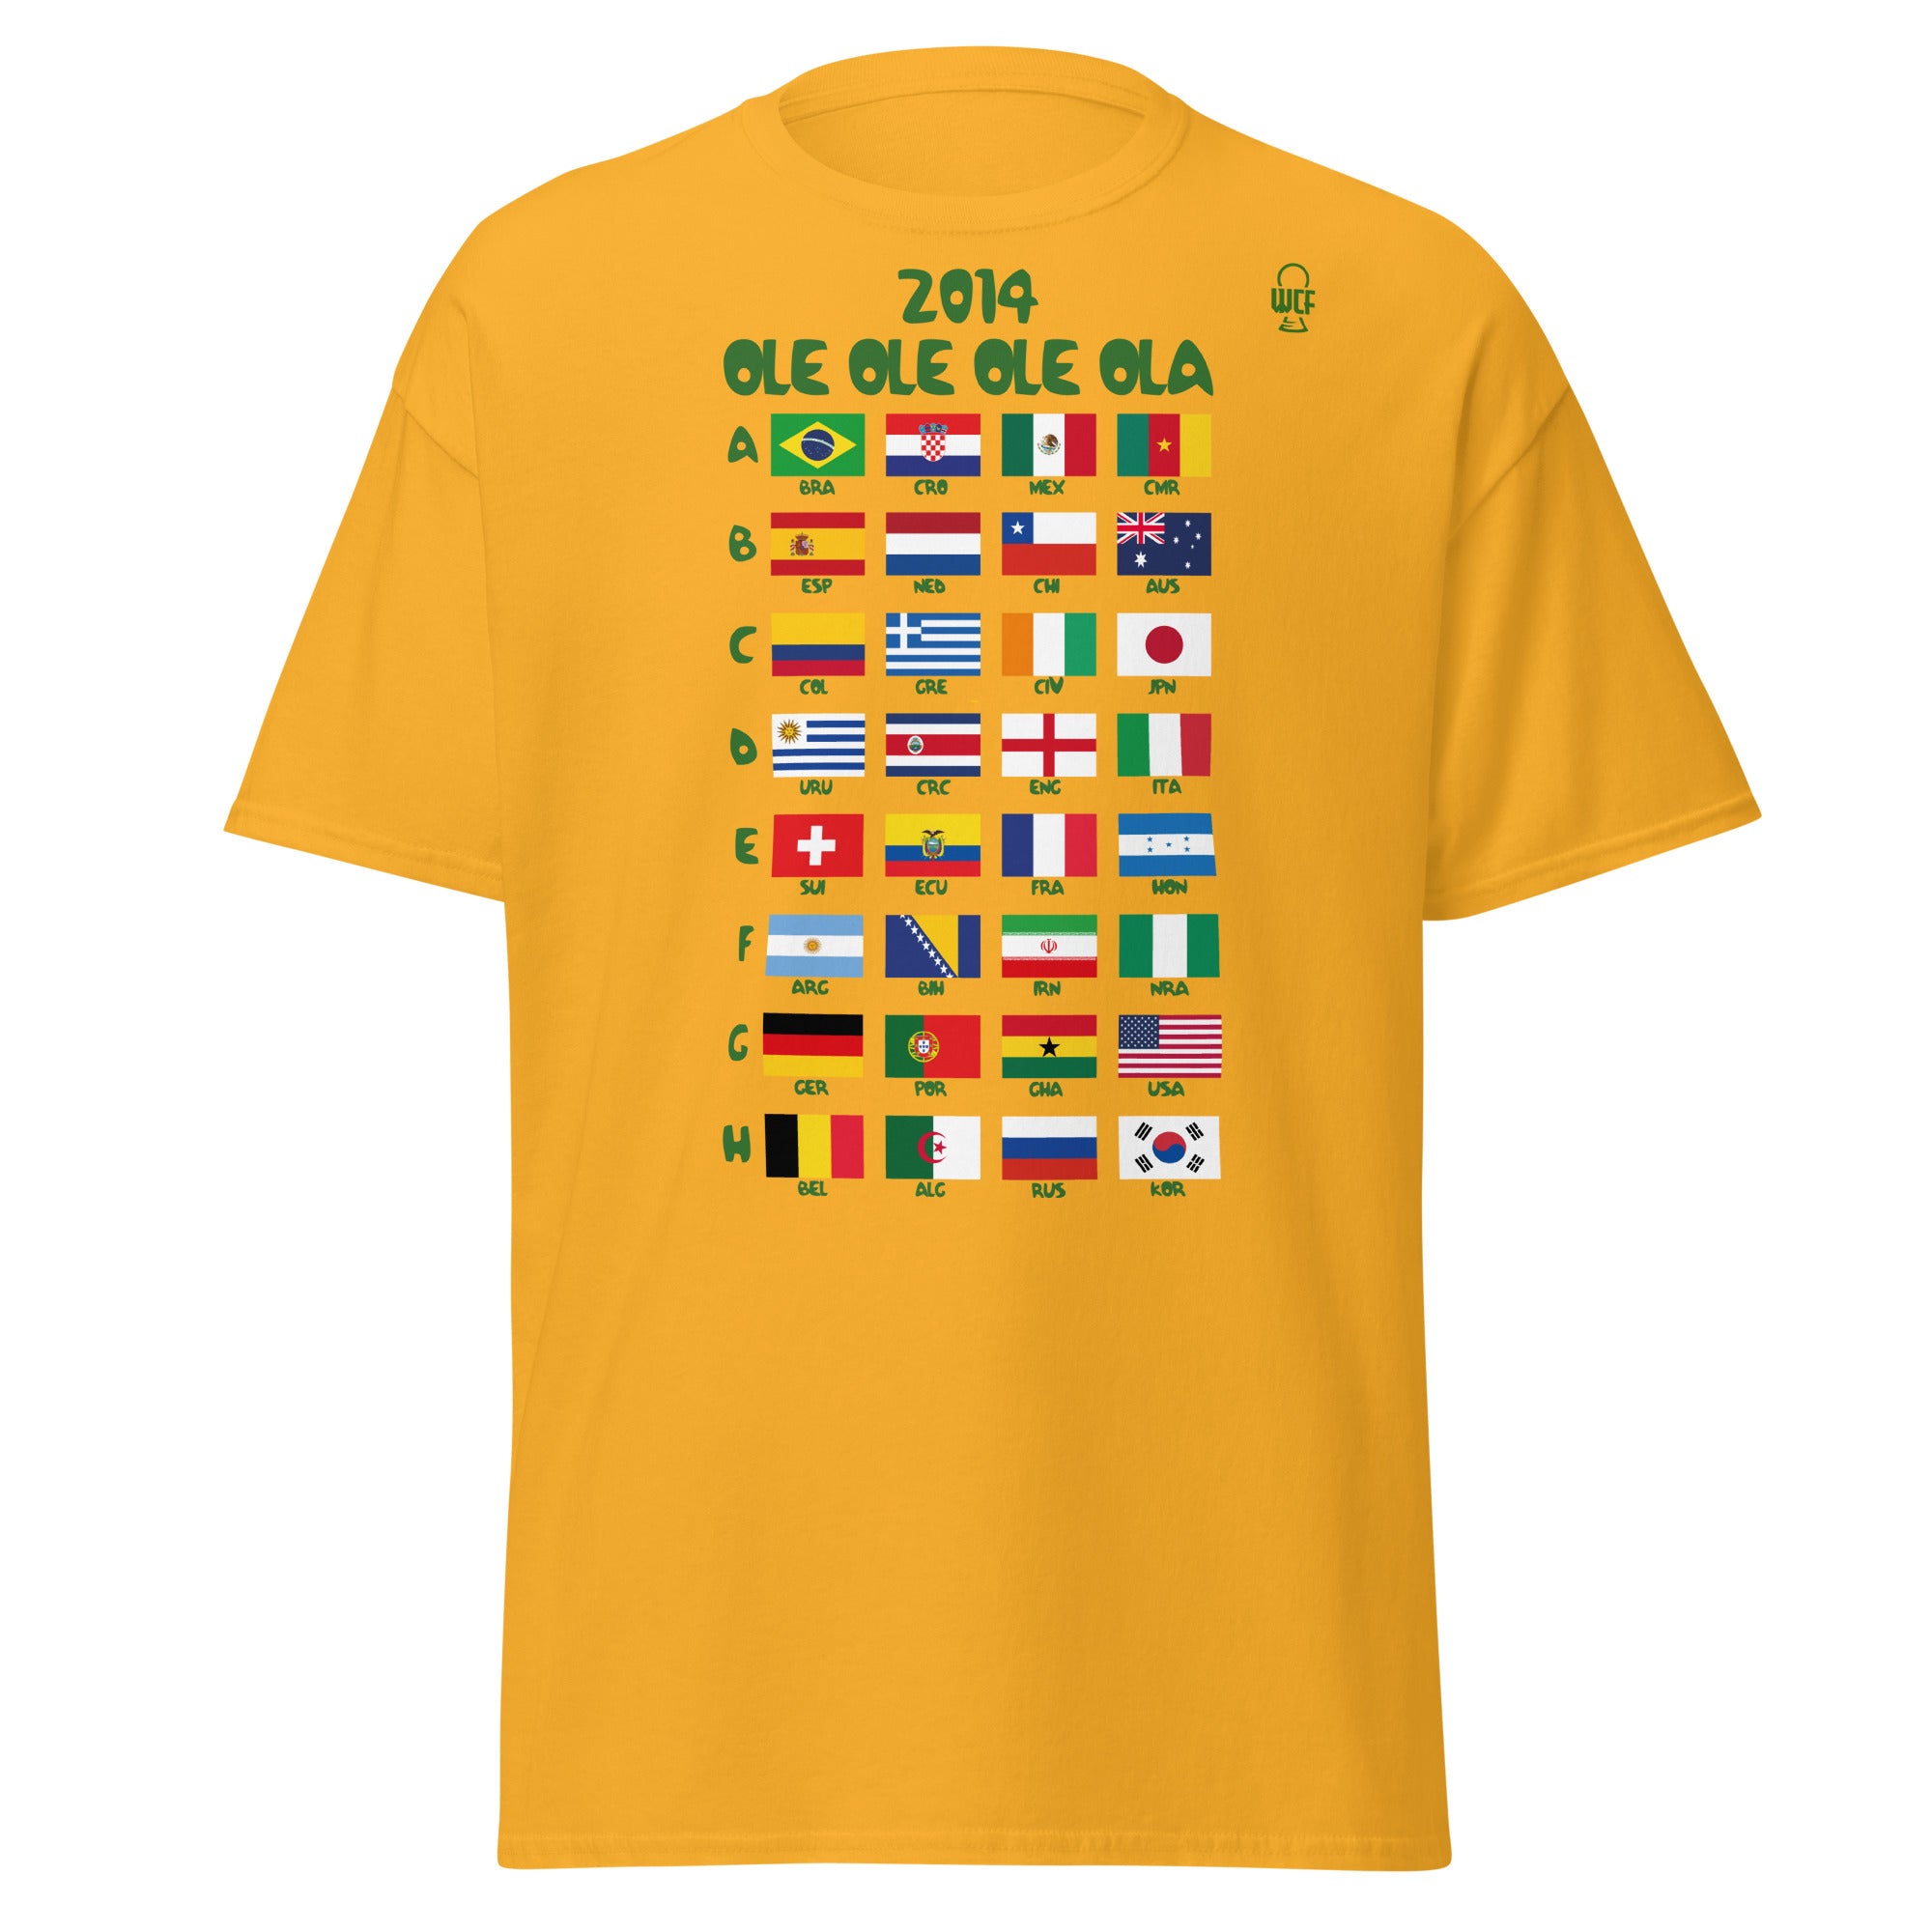 FIFA World Cup Brazil 2014 Classic T-Shirt - OLE OLE OLE OLA